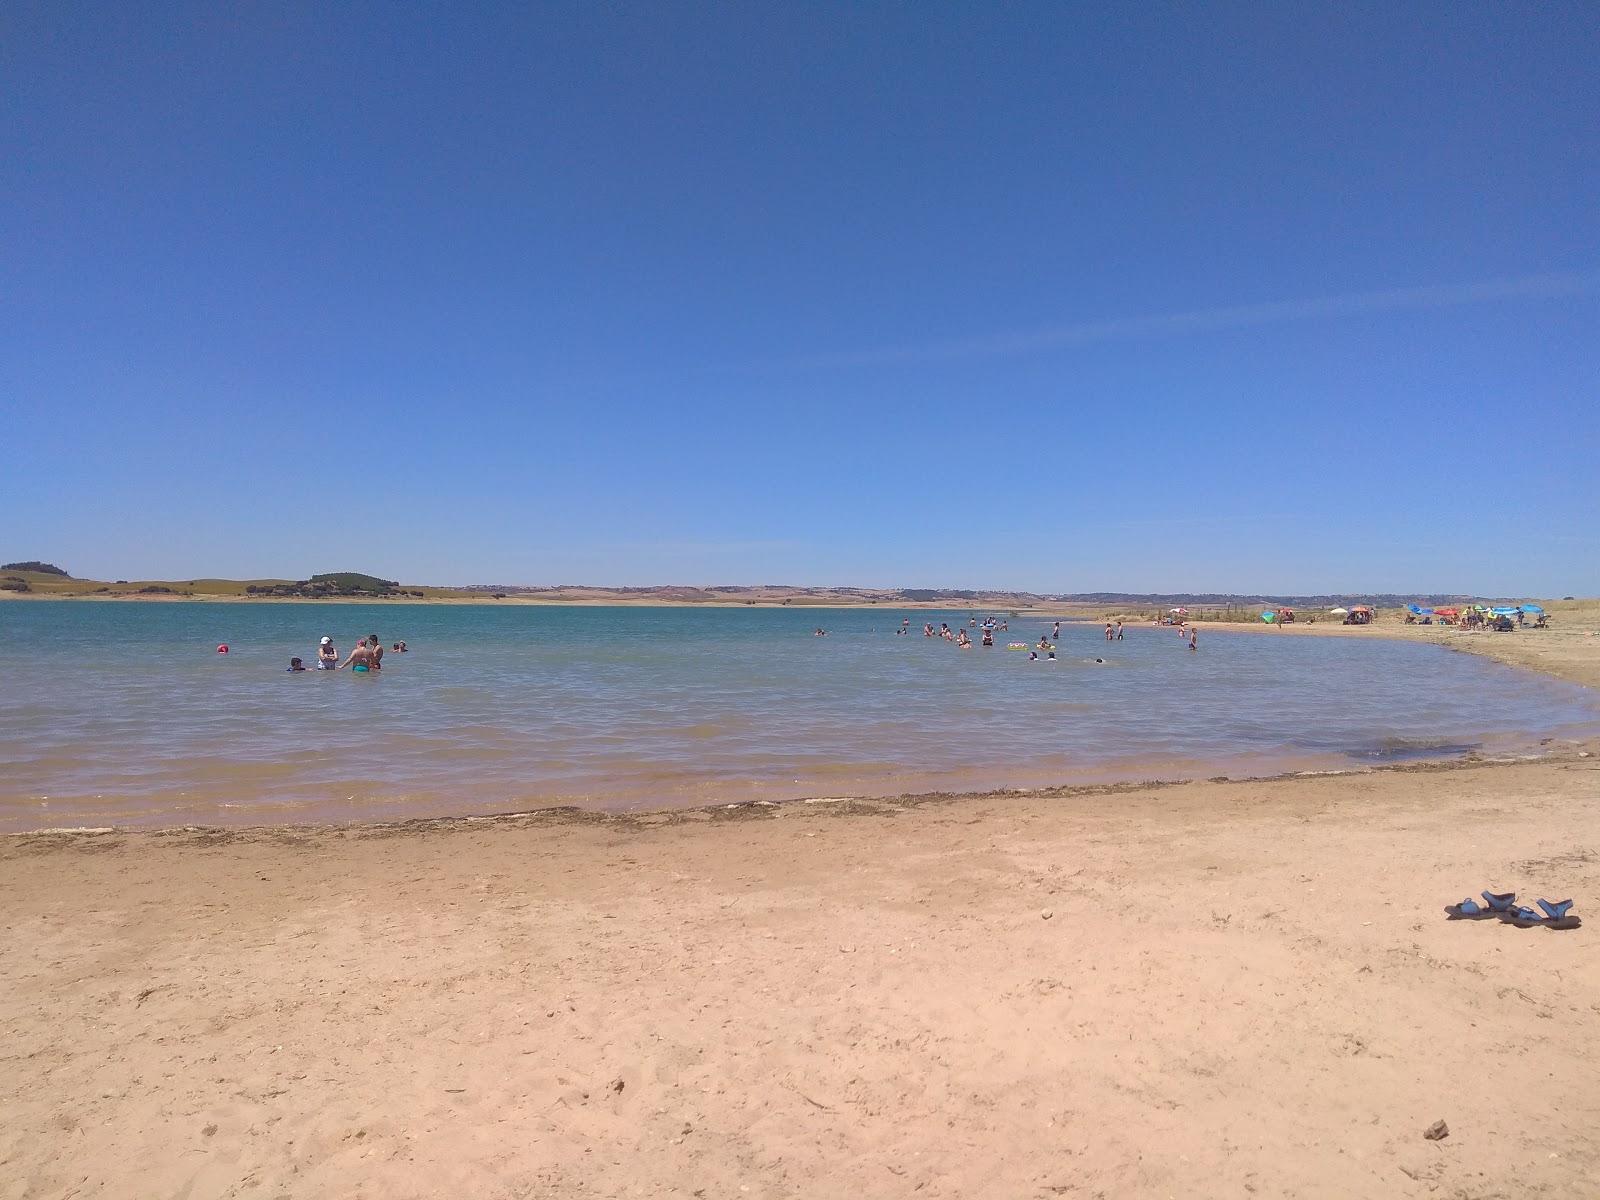 Playa Manchamar'in fotoğrafı parlak kum yüzey ile